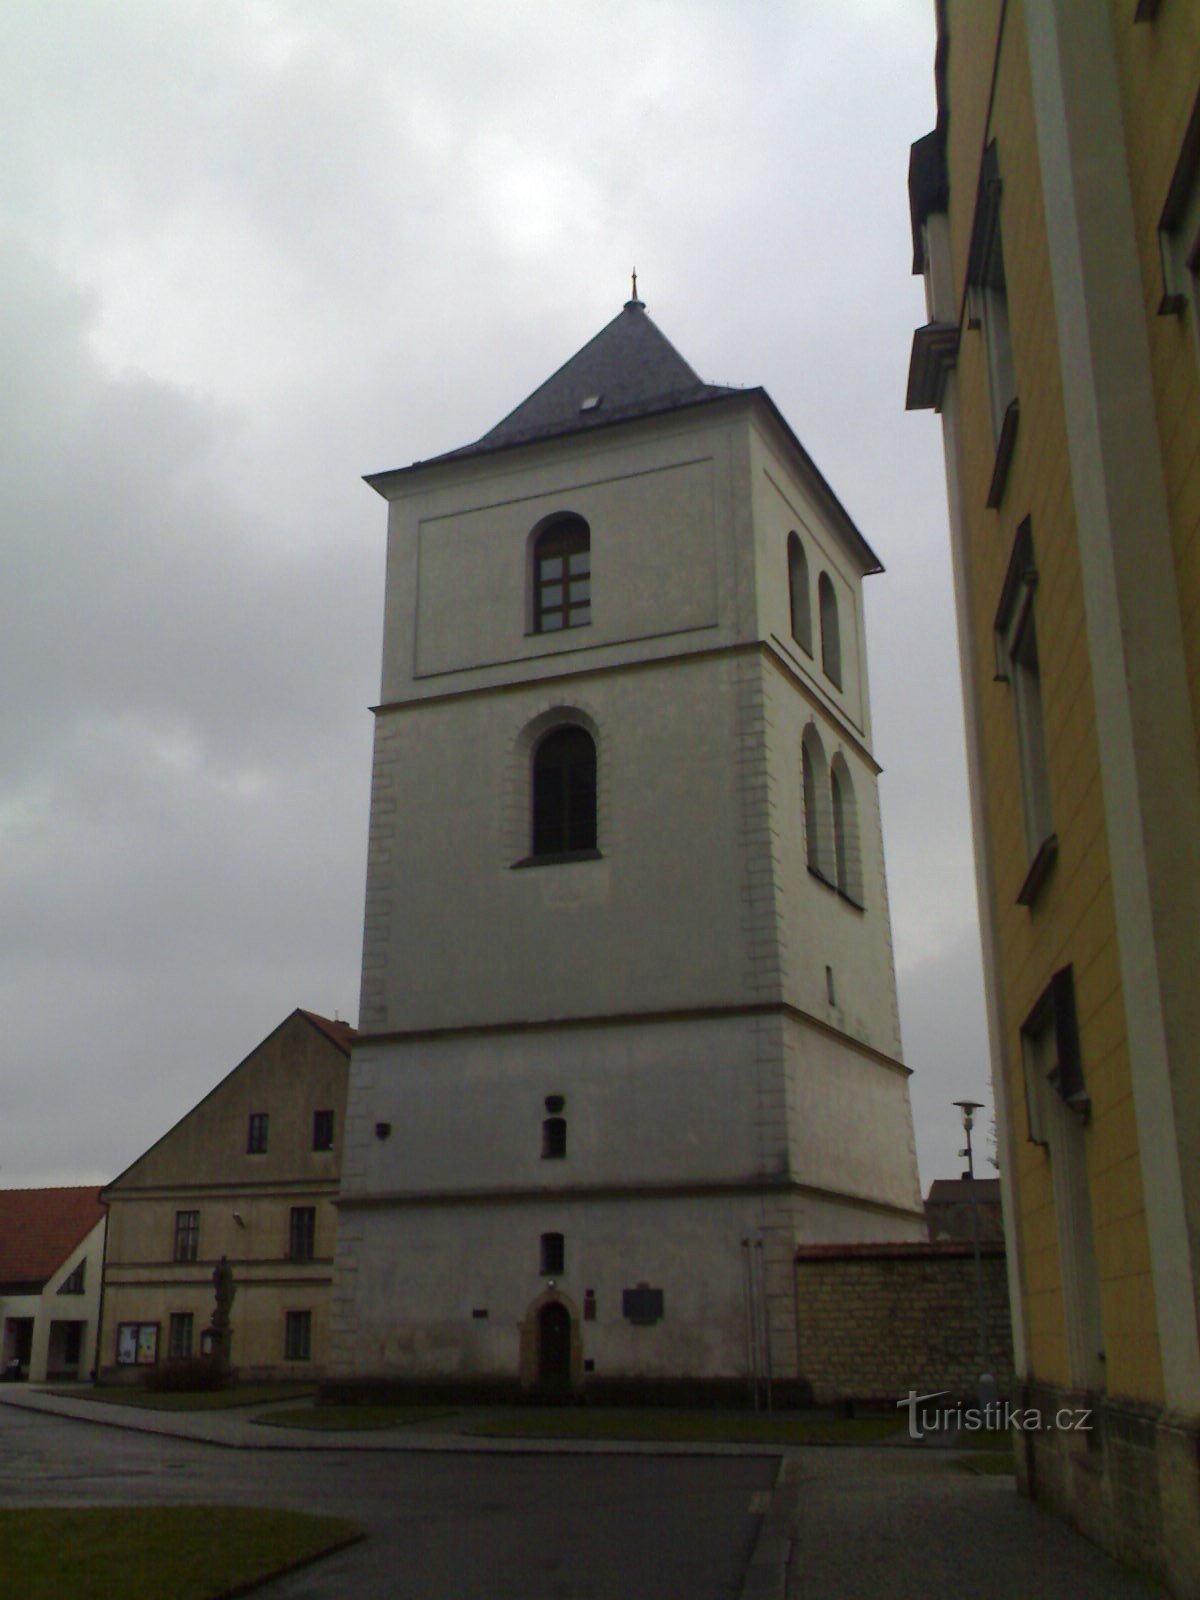 Zvonice - galería de la ciudad En Zvonice